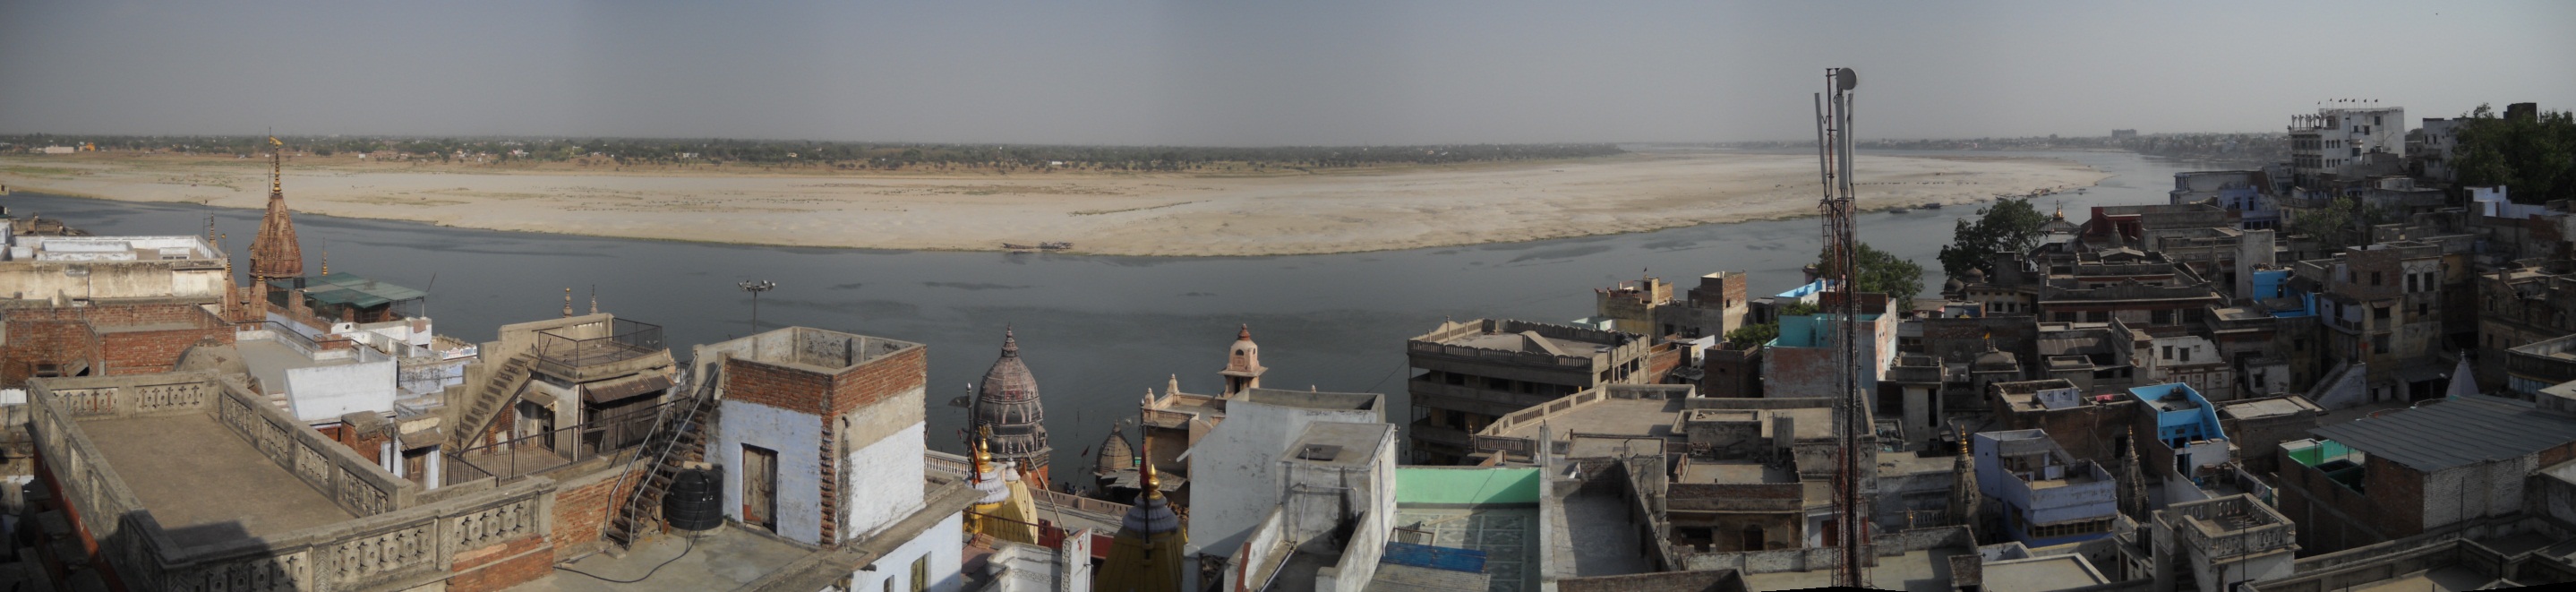 1 - Panorama Varanassi Ganga View Rooftop v2